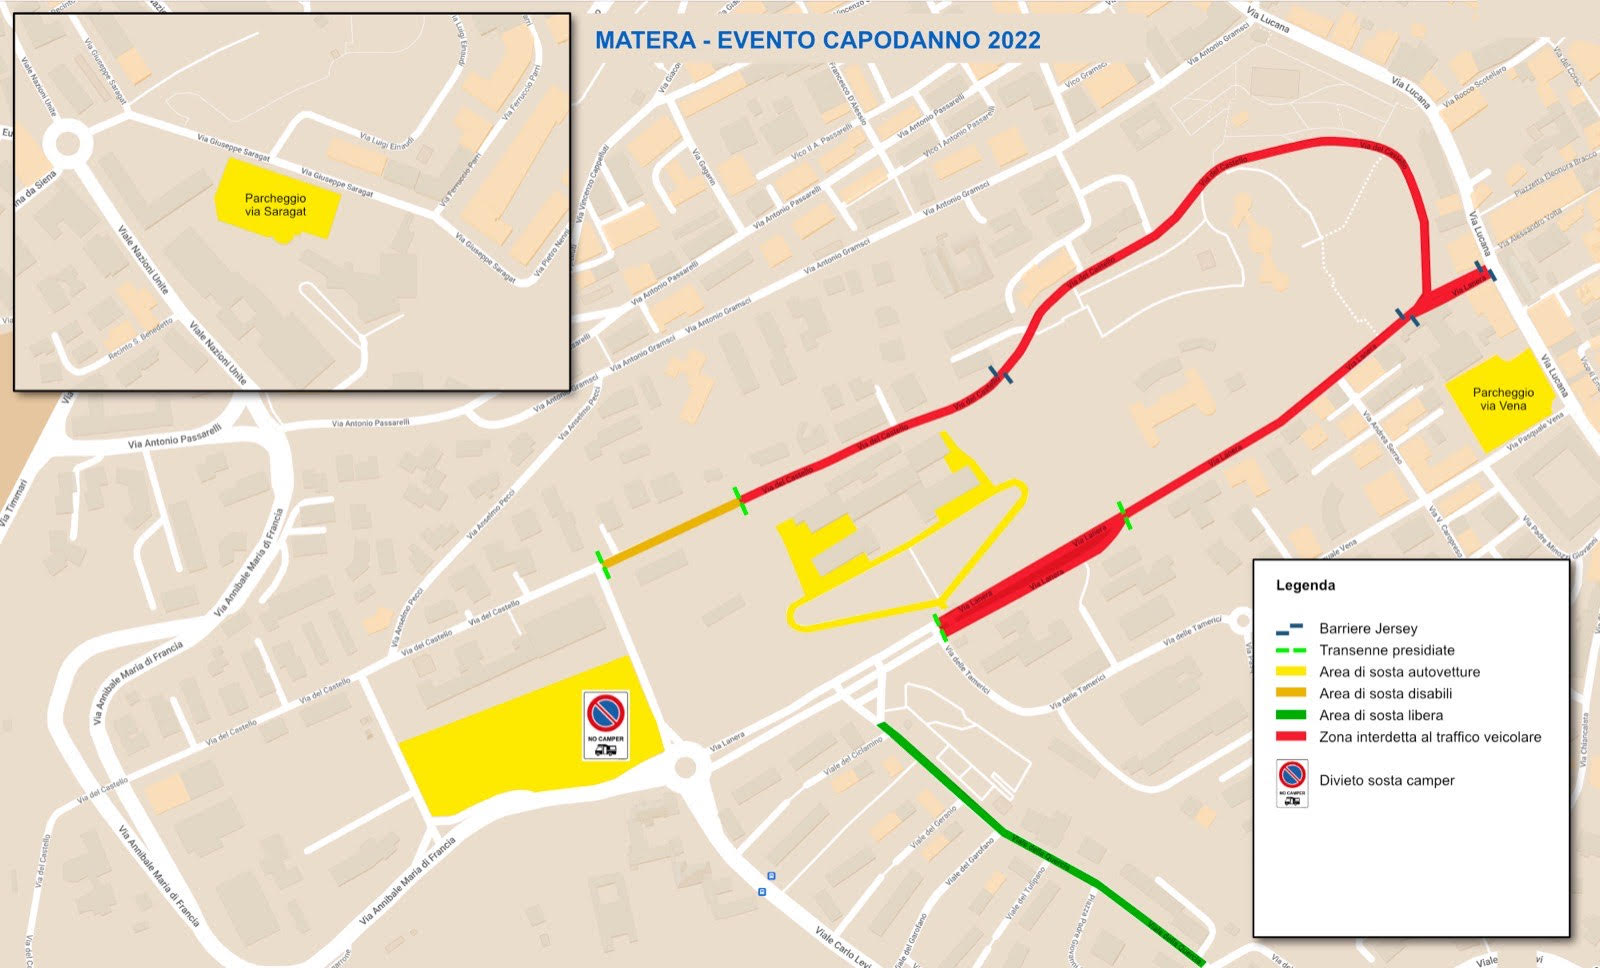 Notte di San Silvestro a Matera: divieti e restrizioni alla mobilità urbana nell’area del Castello Tramontano